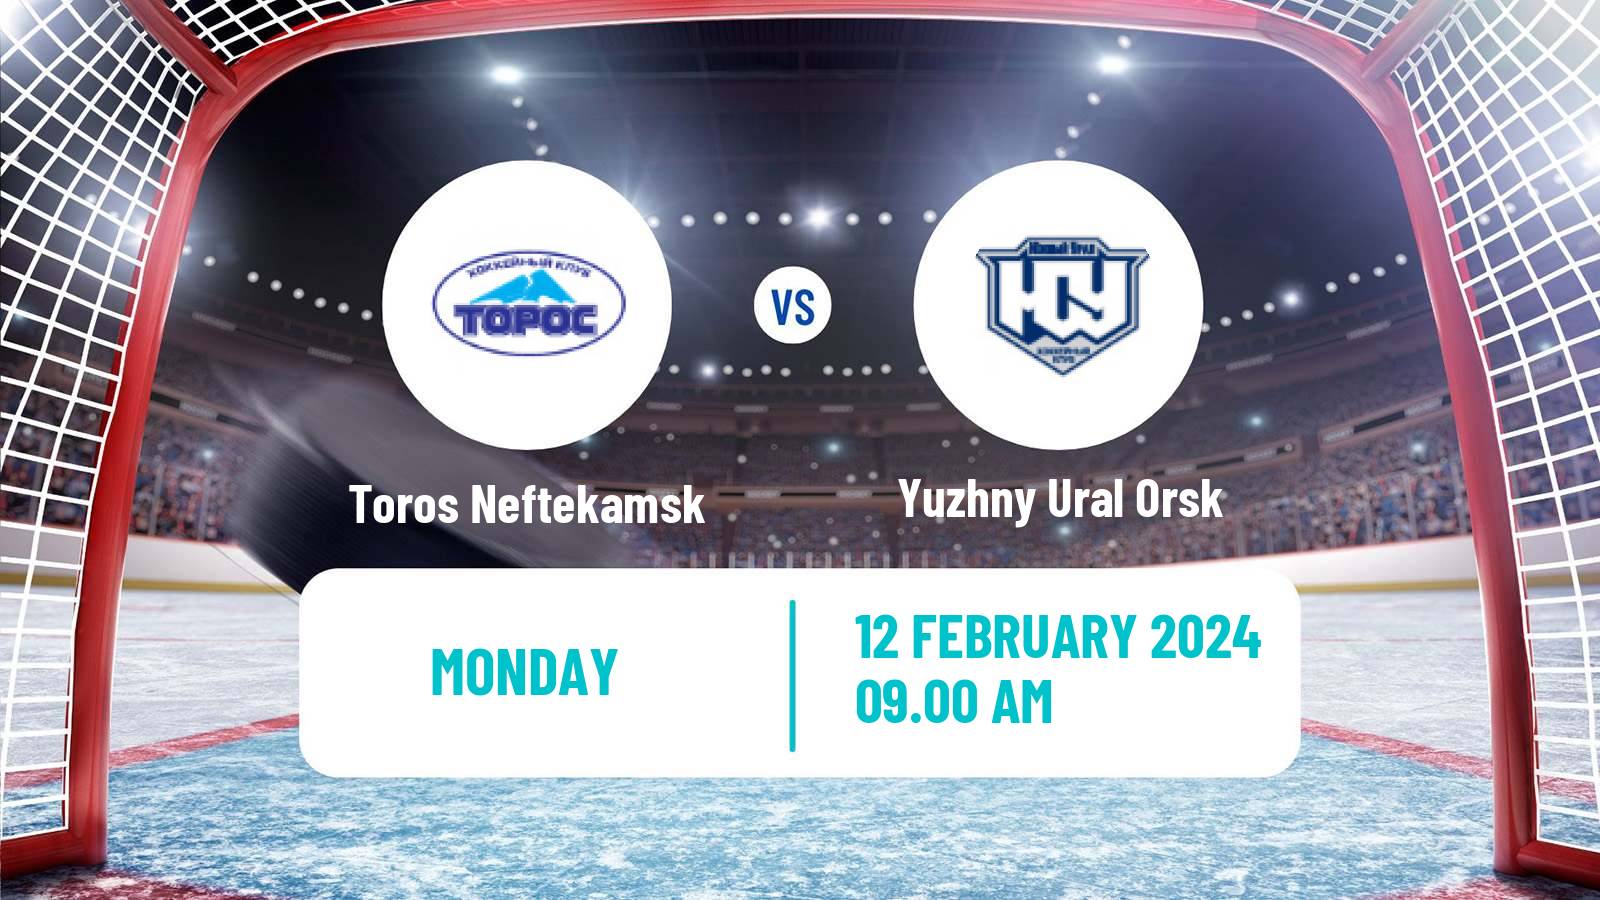 Hockey VHL Toros Neftekamsk - Yuzhny Ural Orsk